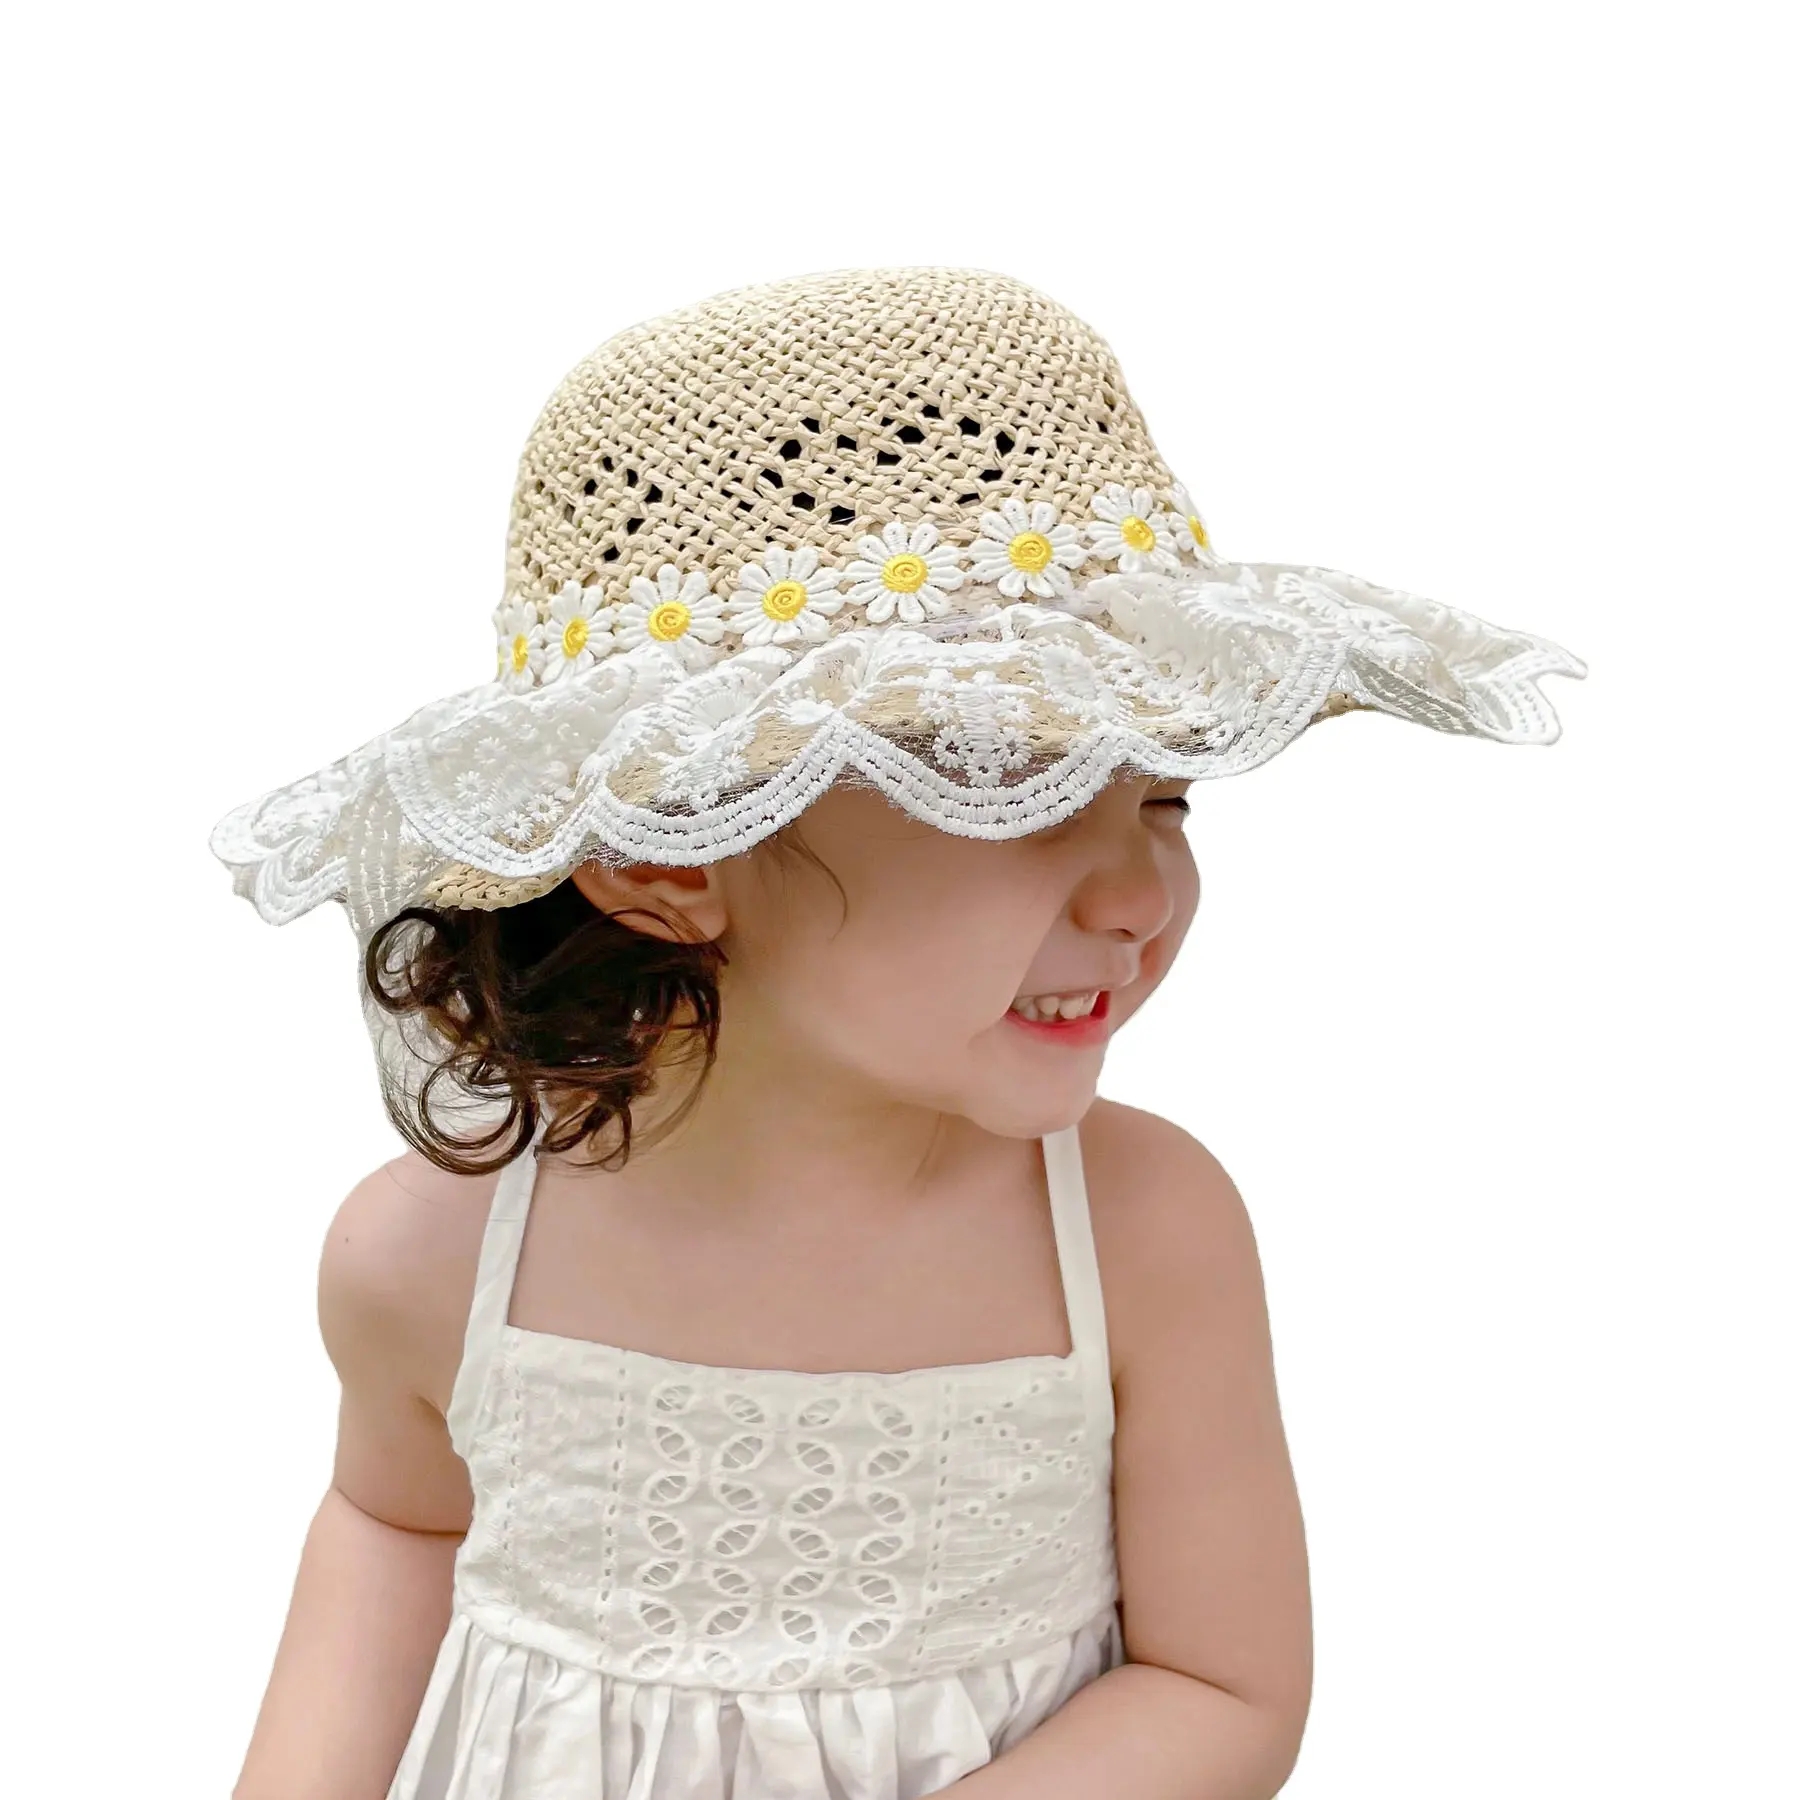 Baby little girls kids sunhats flower ricamo pizzo tesa larga outdoor beach sun hats crochet sun floppy toddler girl hats